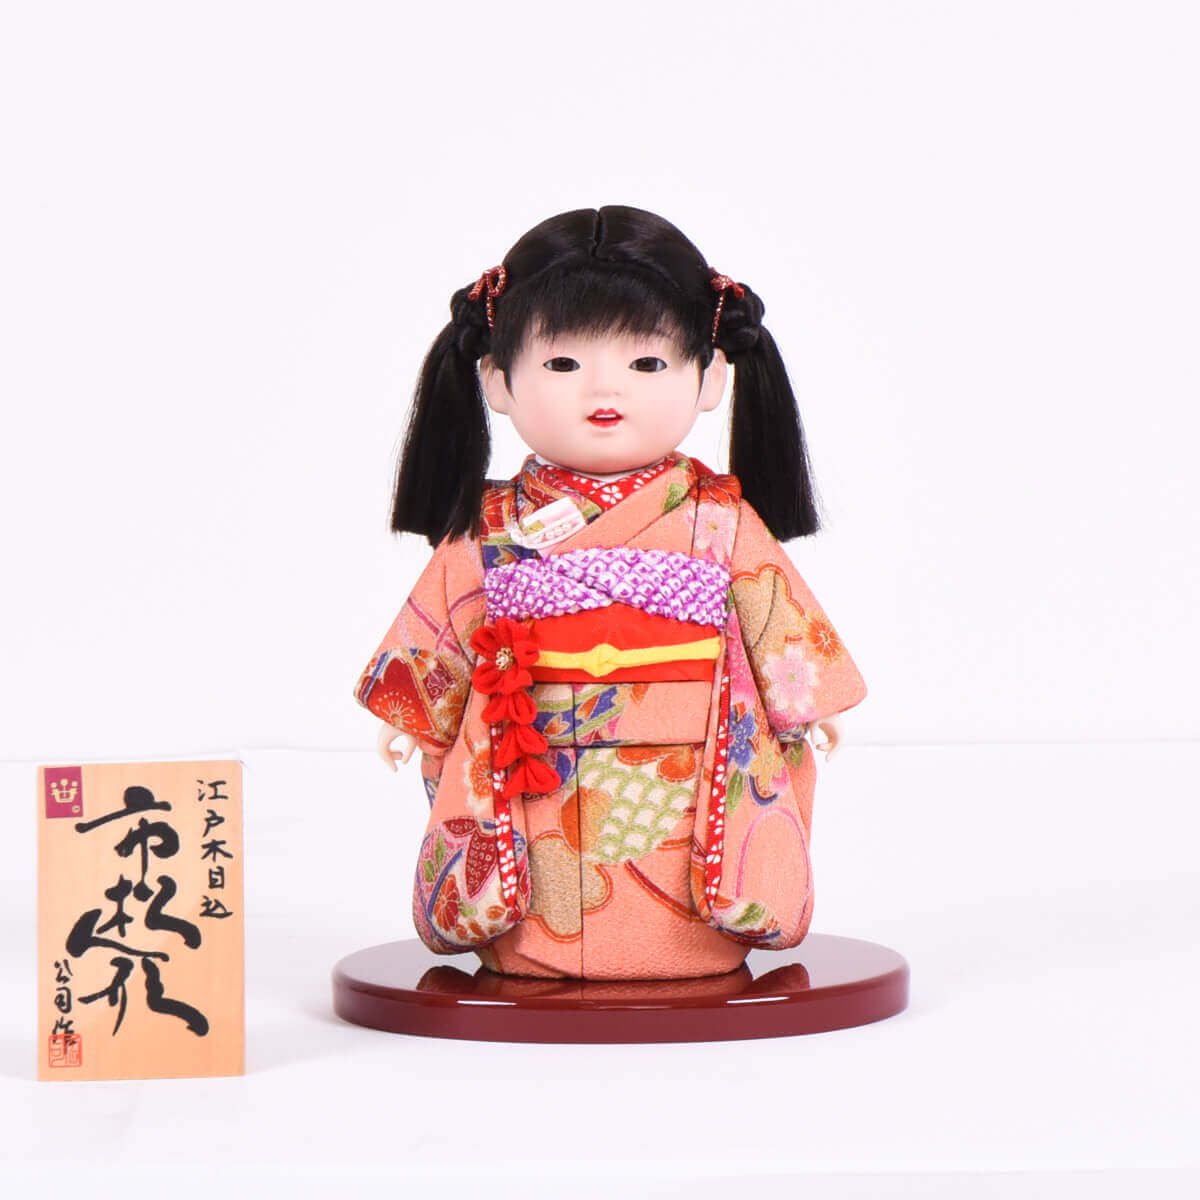 日本限定モデル】 藤村明光市松人形 おもちゃ/人形 - powertee.com